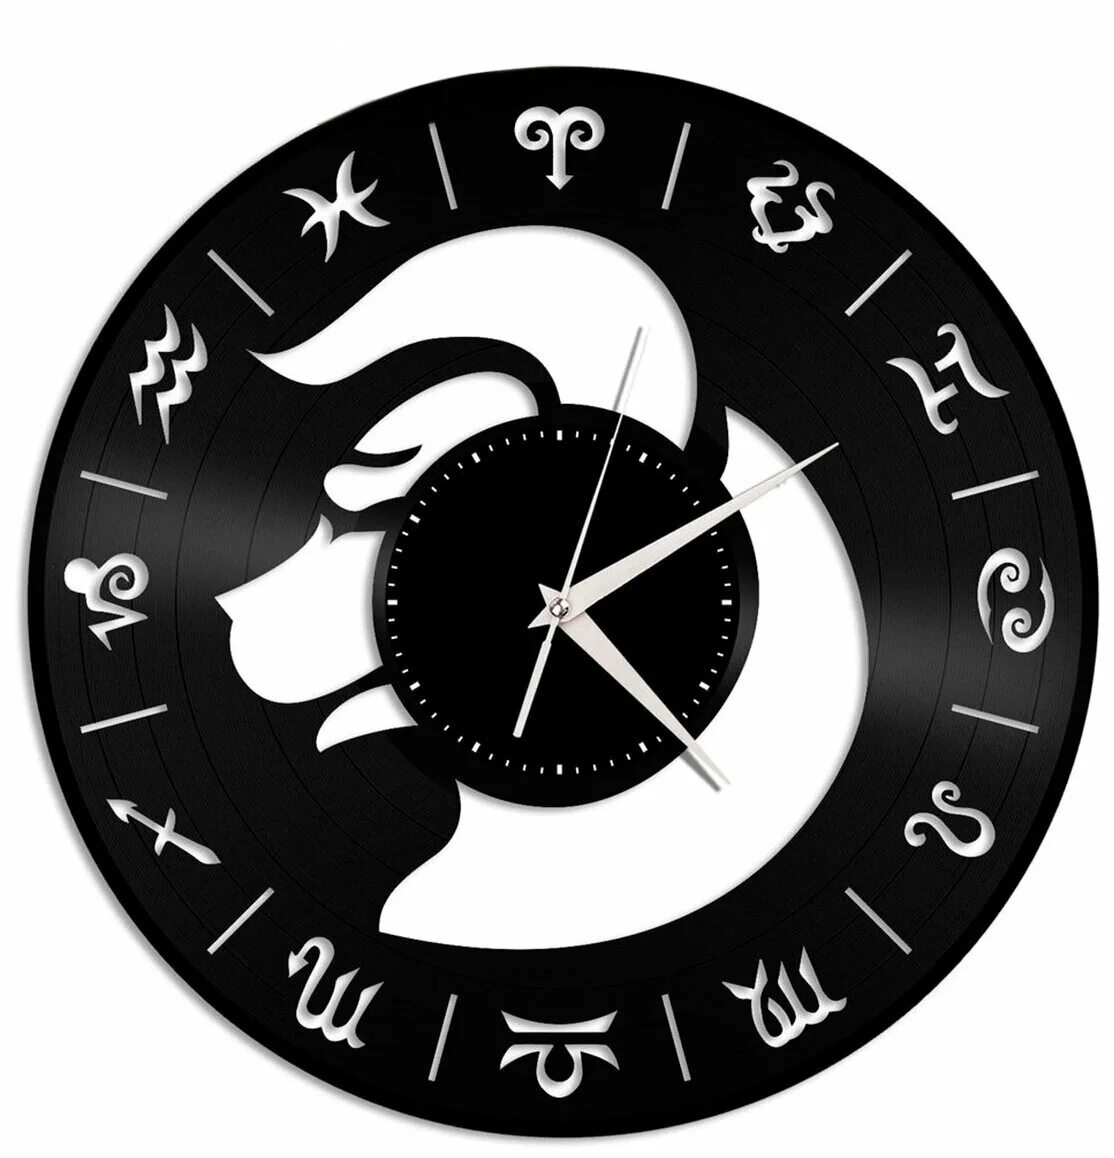 Часы зодиак. Часы настенные Зодиак. Часы Zodiac. Часы с зодиакальным циферблатом. Часы с тельцом.